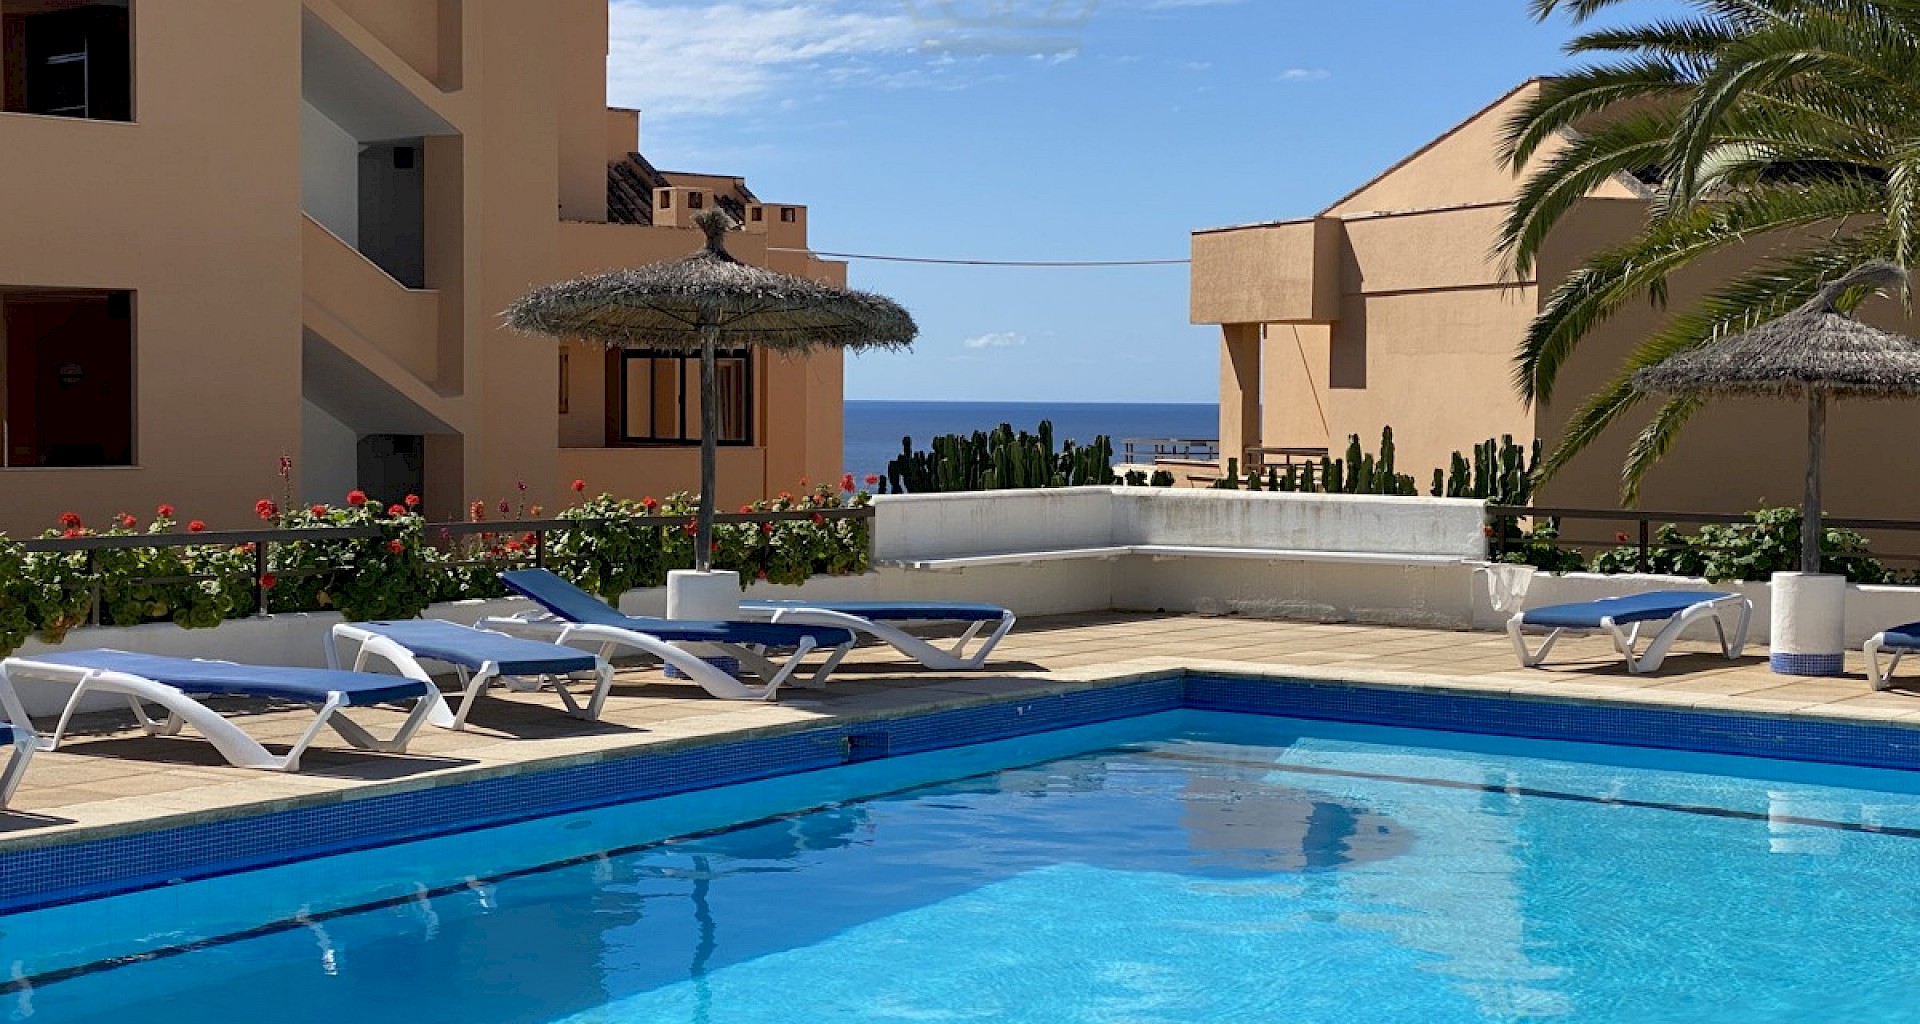 KROHN & LUEDEMANN Meerblickwohnung in Illetes nähe Palma zum Kaufen mit grosser Terrasse 